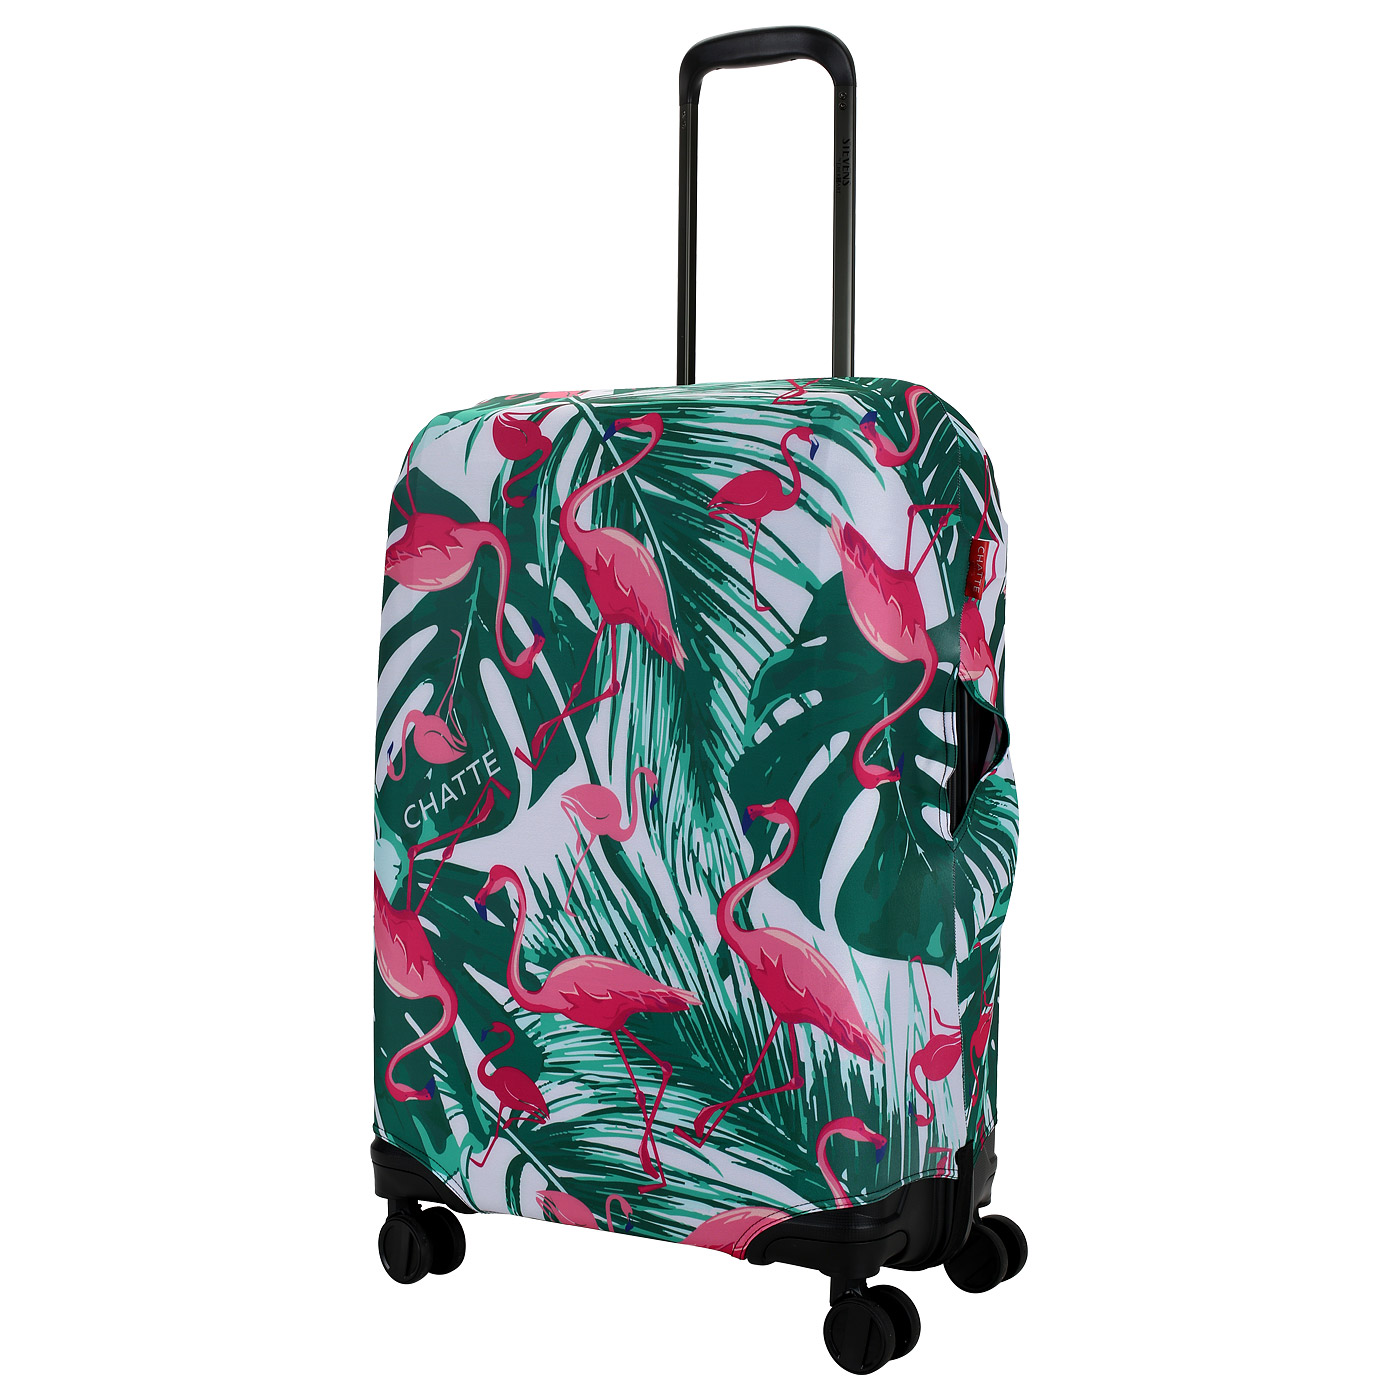 Chatte Чехол для чемодана с тропическим принтом